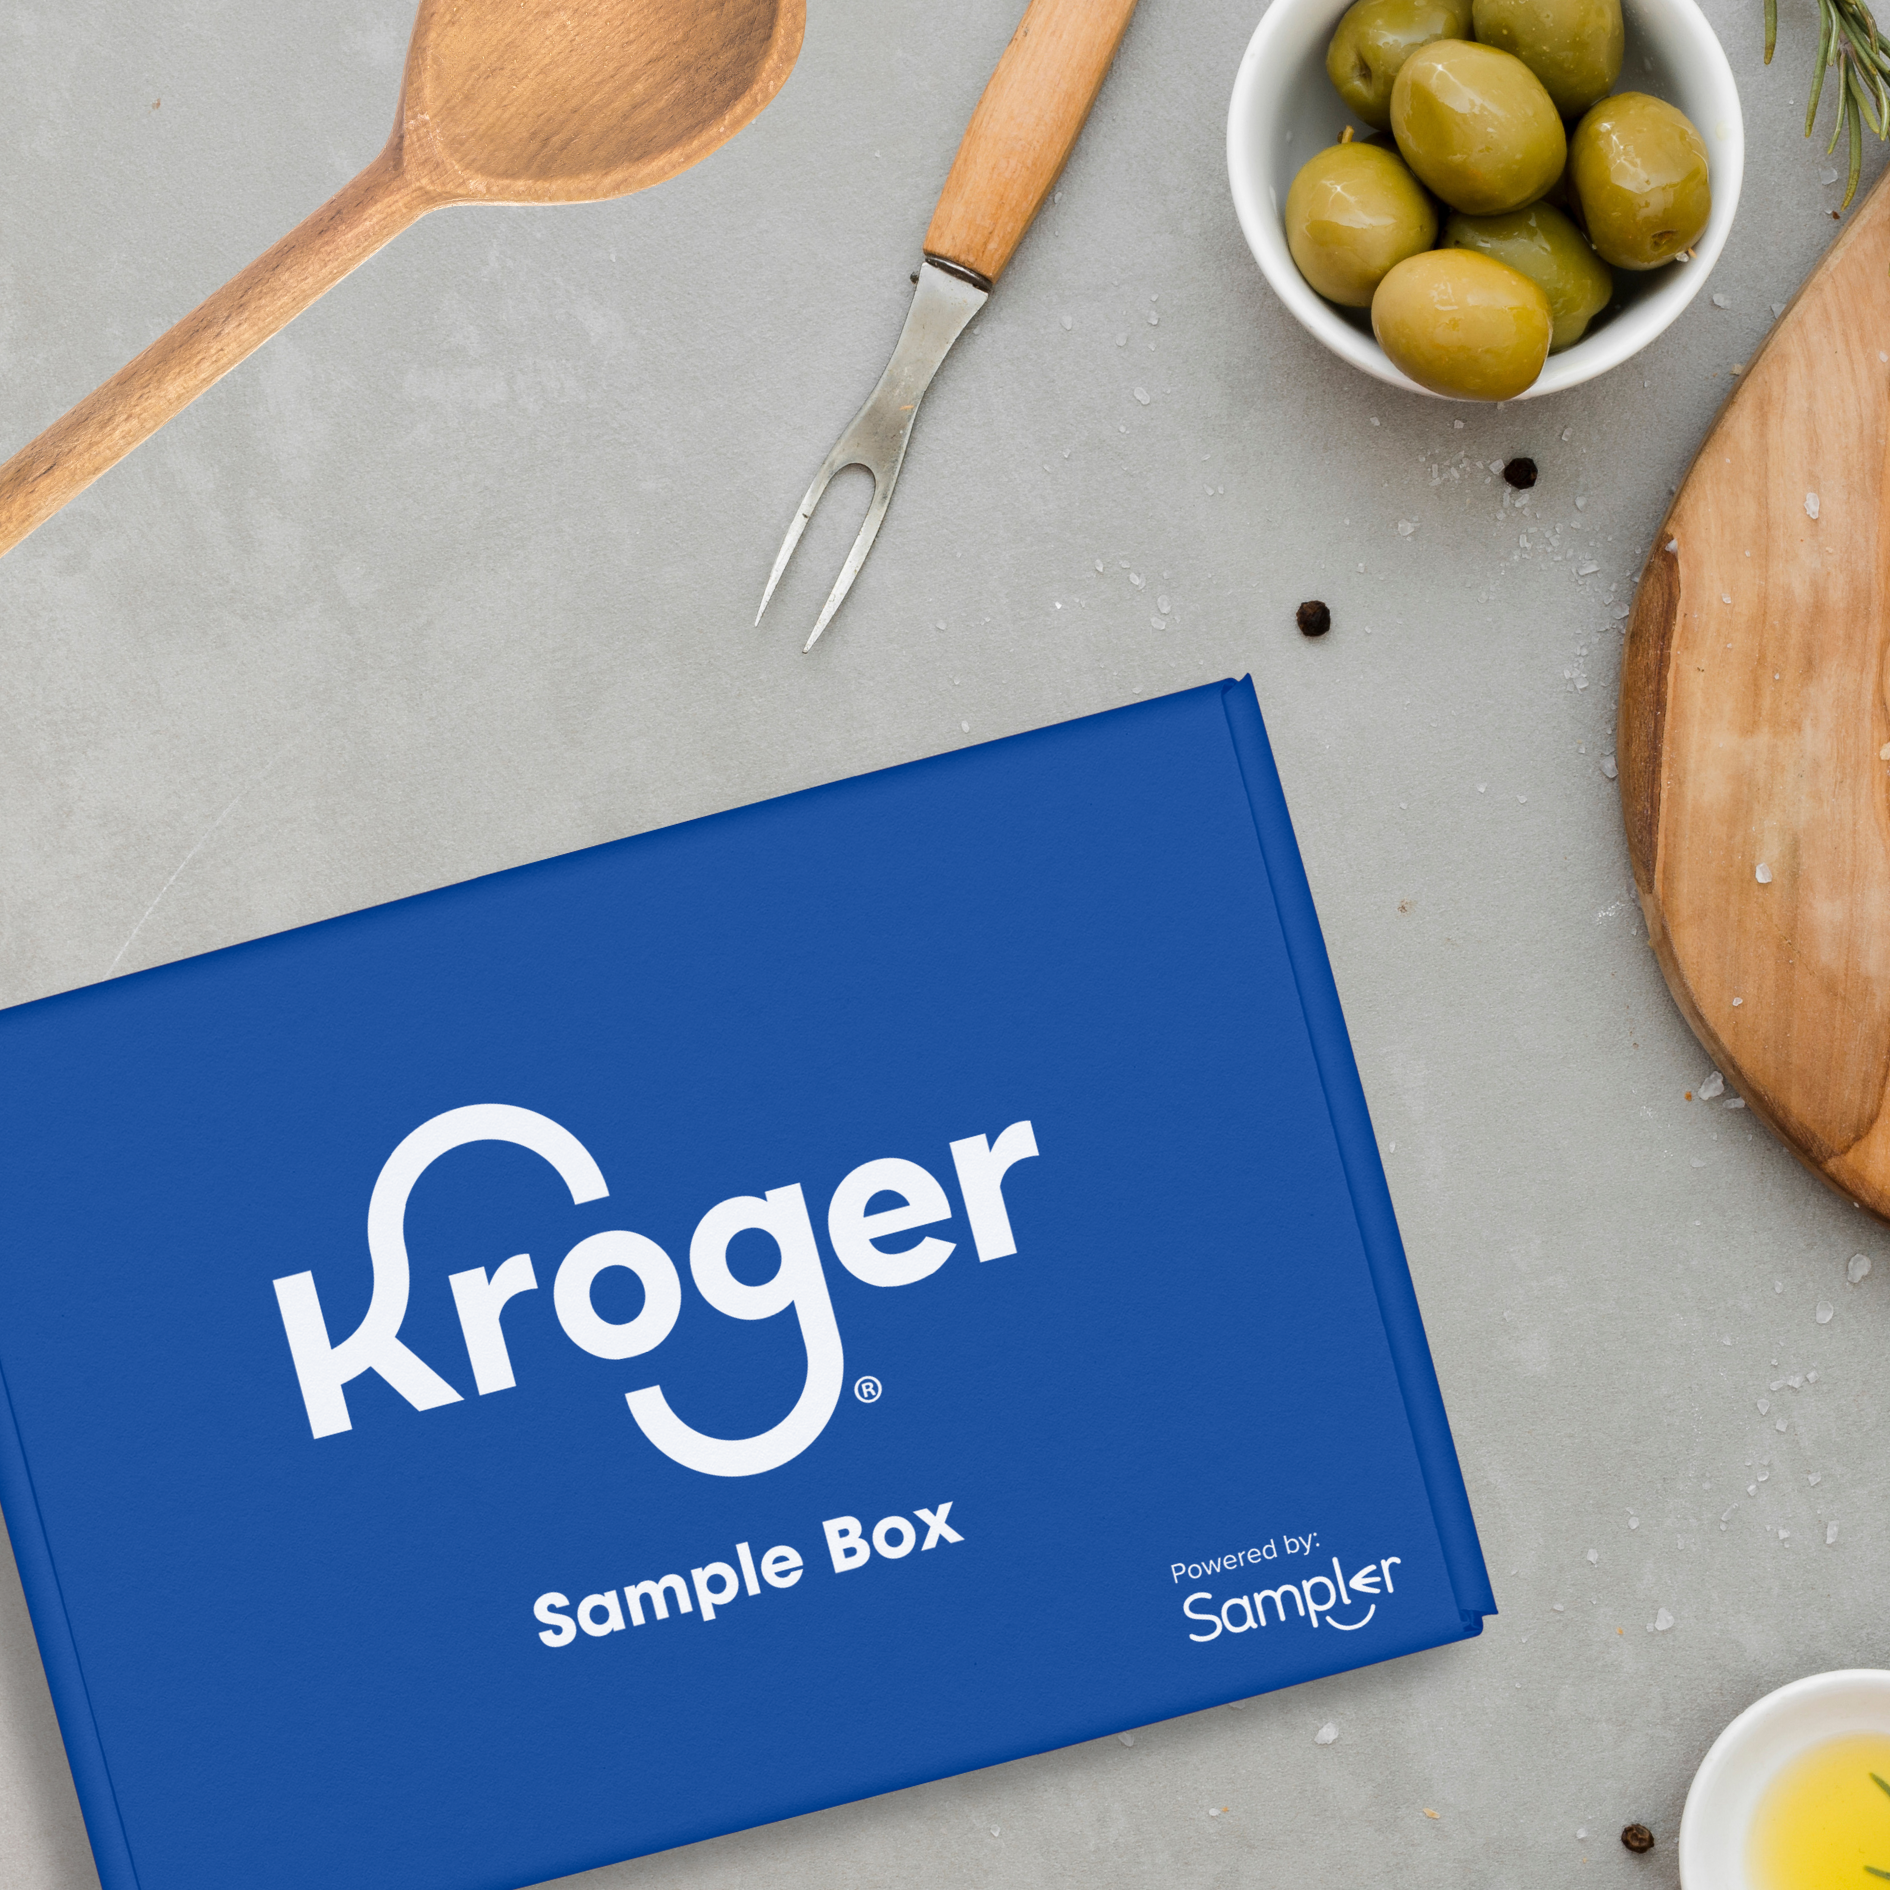 NEW Free Kroger Sampler Box